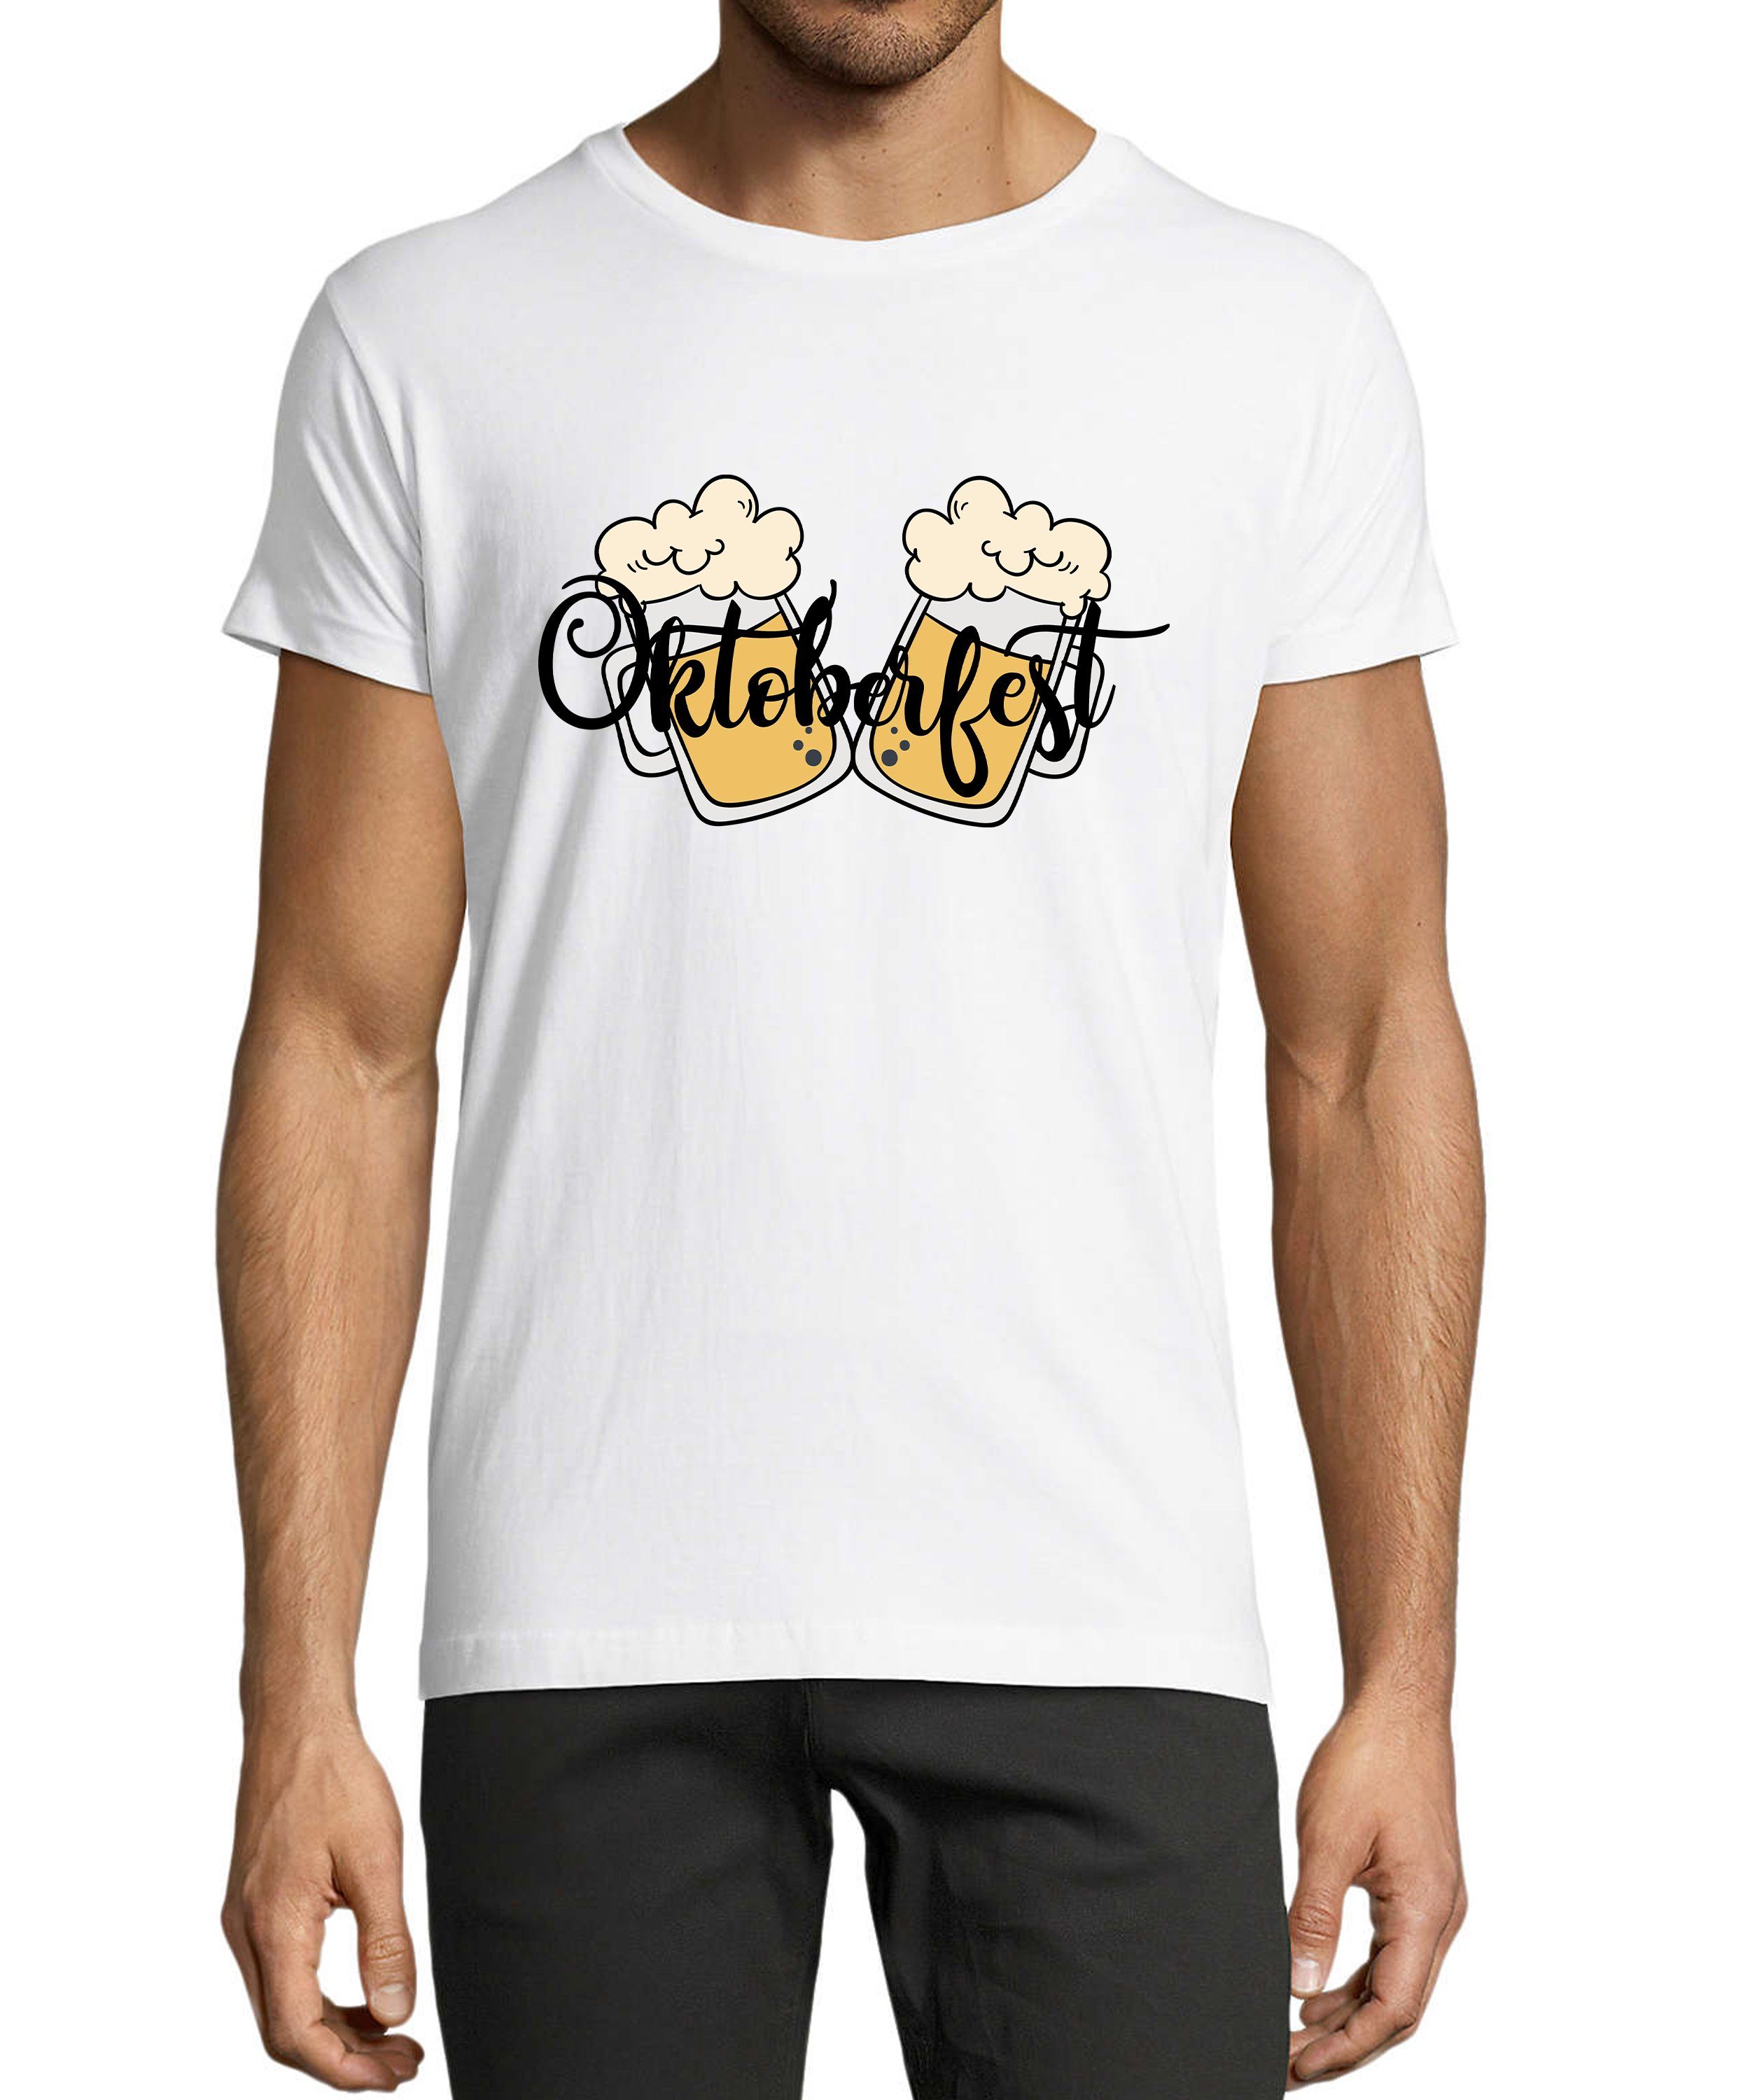 MyDesign24 T-Shirt Herren Party Shirt - Trinkshirt Oktoberfest T-Shirt 2 Biergläser Baumwollshirt mit Aufdruck Regular Fit, i326 weiss | Trachtenshirts